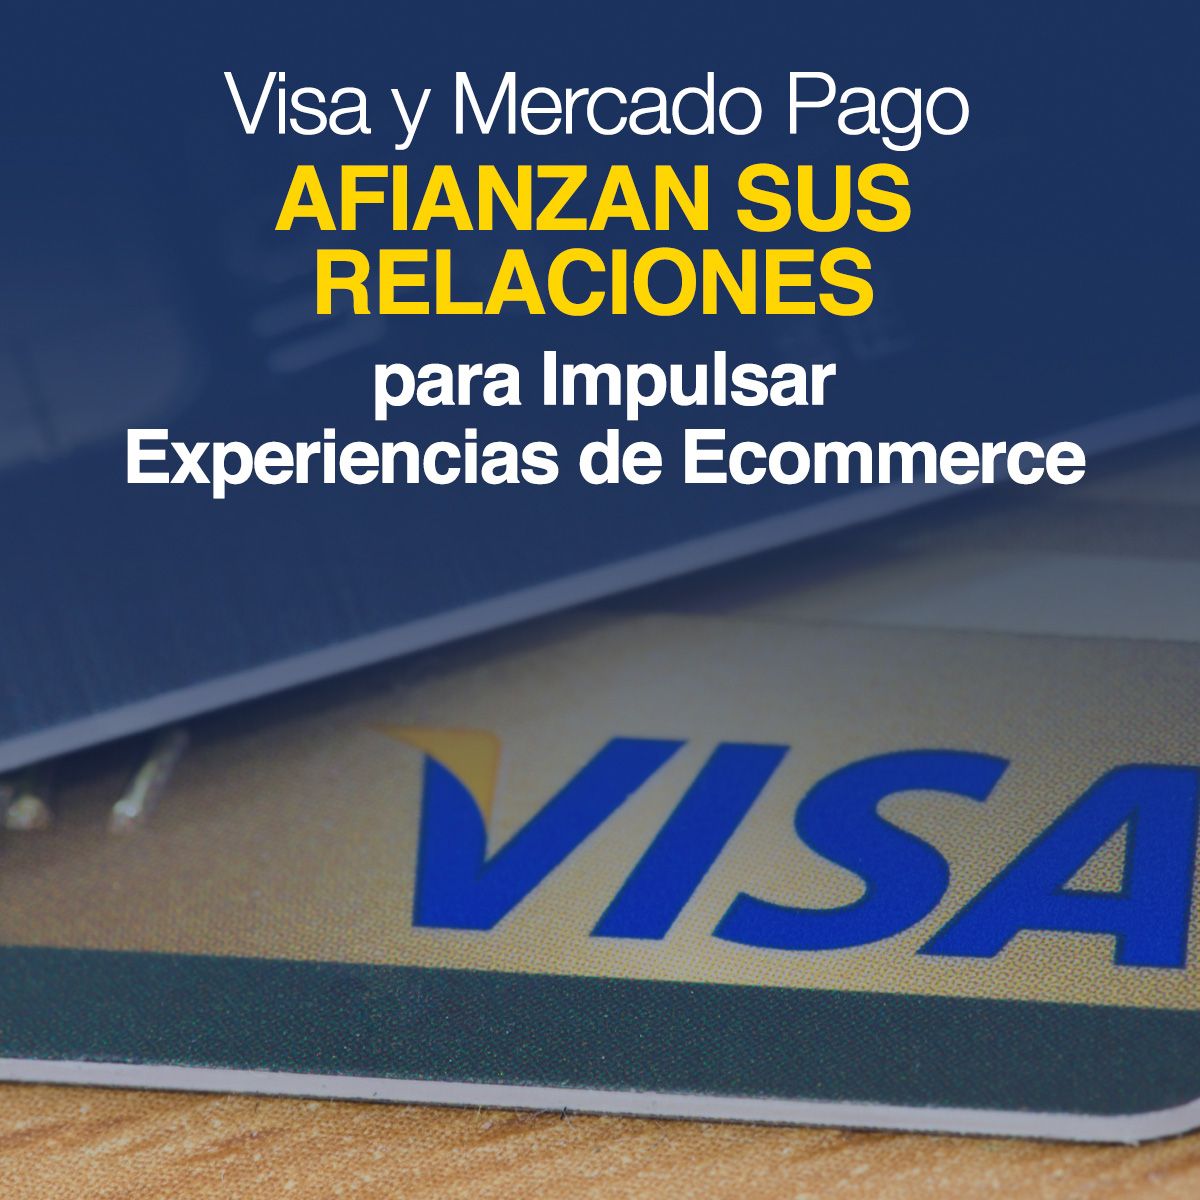 Visa y Mercado Pago Afianzan sus Relaciones para Impulsar Experiencias de Ecommerce